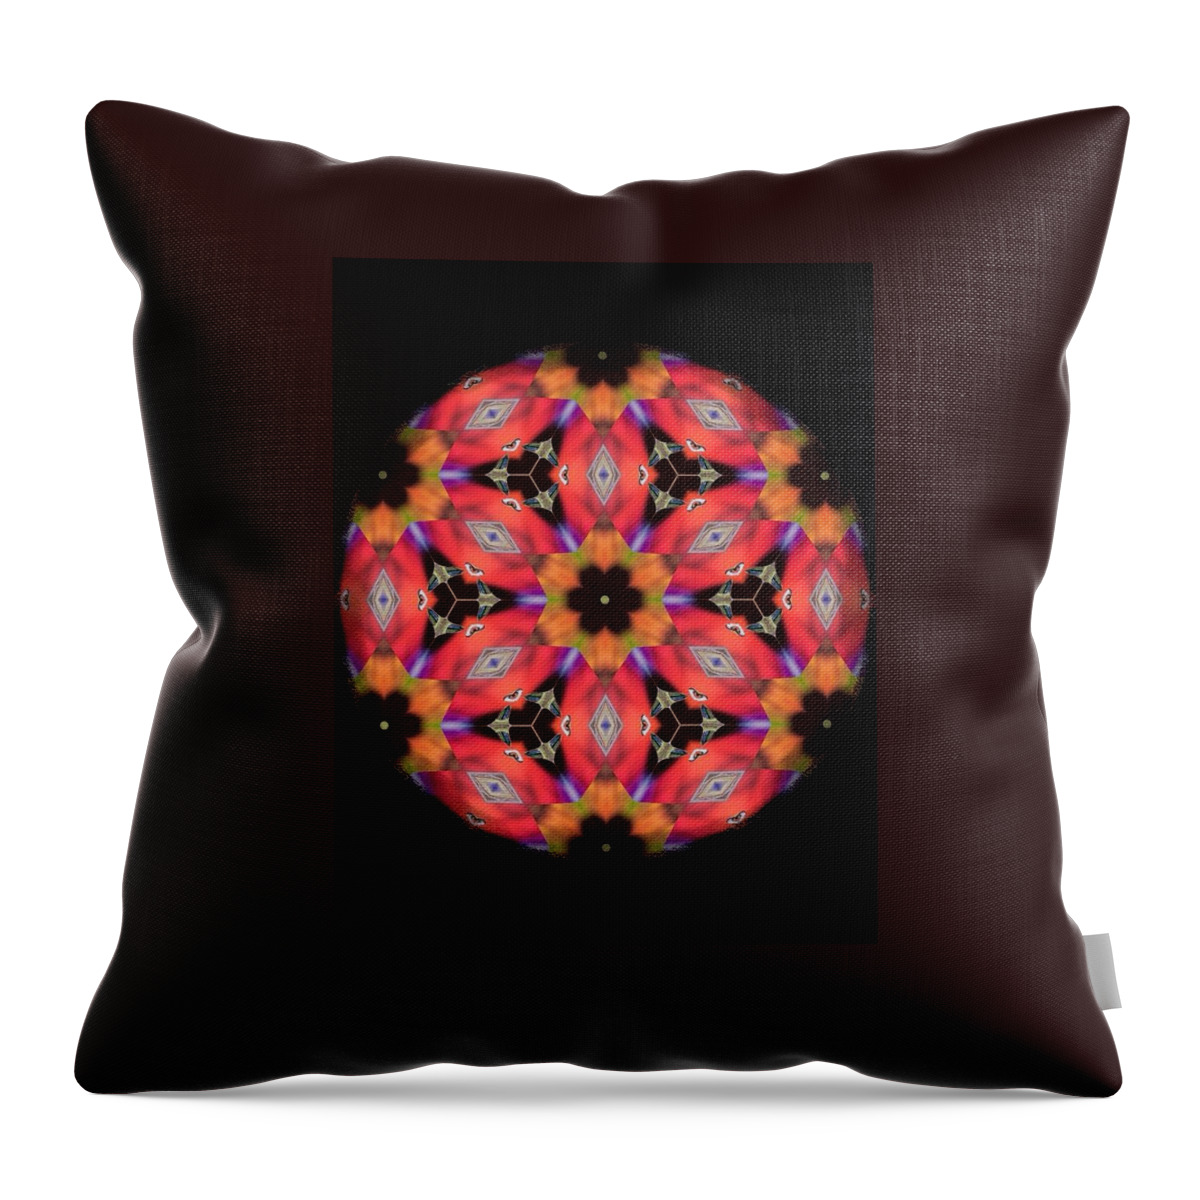 Digital Art Throw Pillow featuring the digital art iCube Mandala by Karen Buford